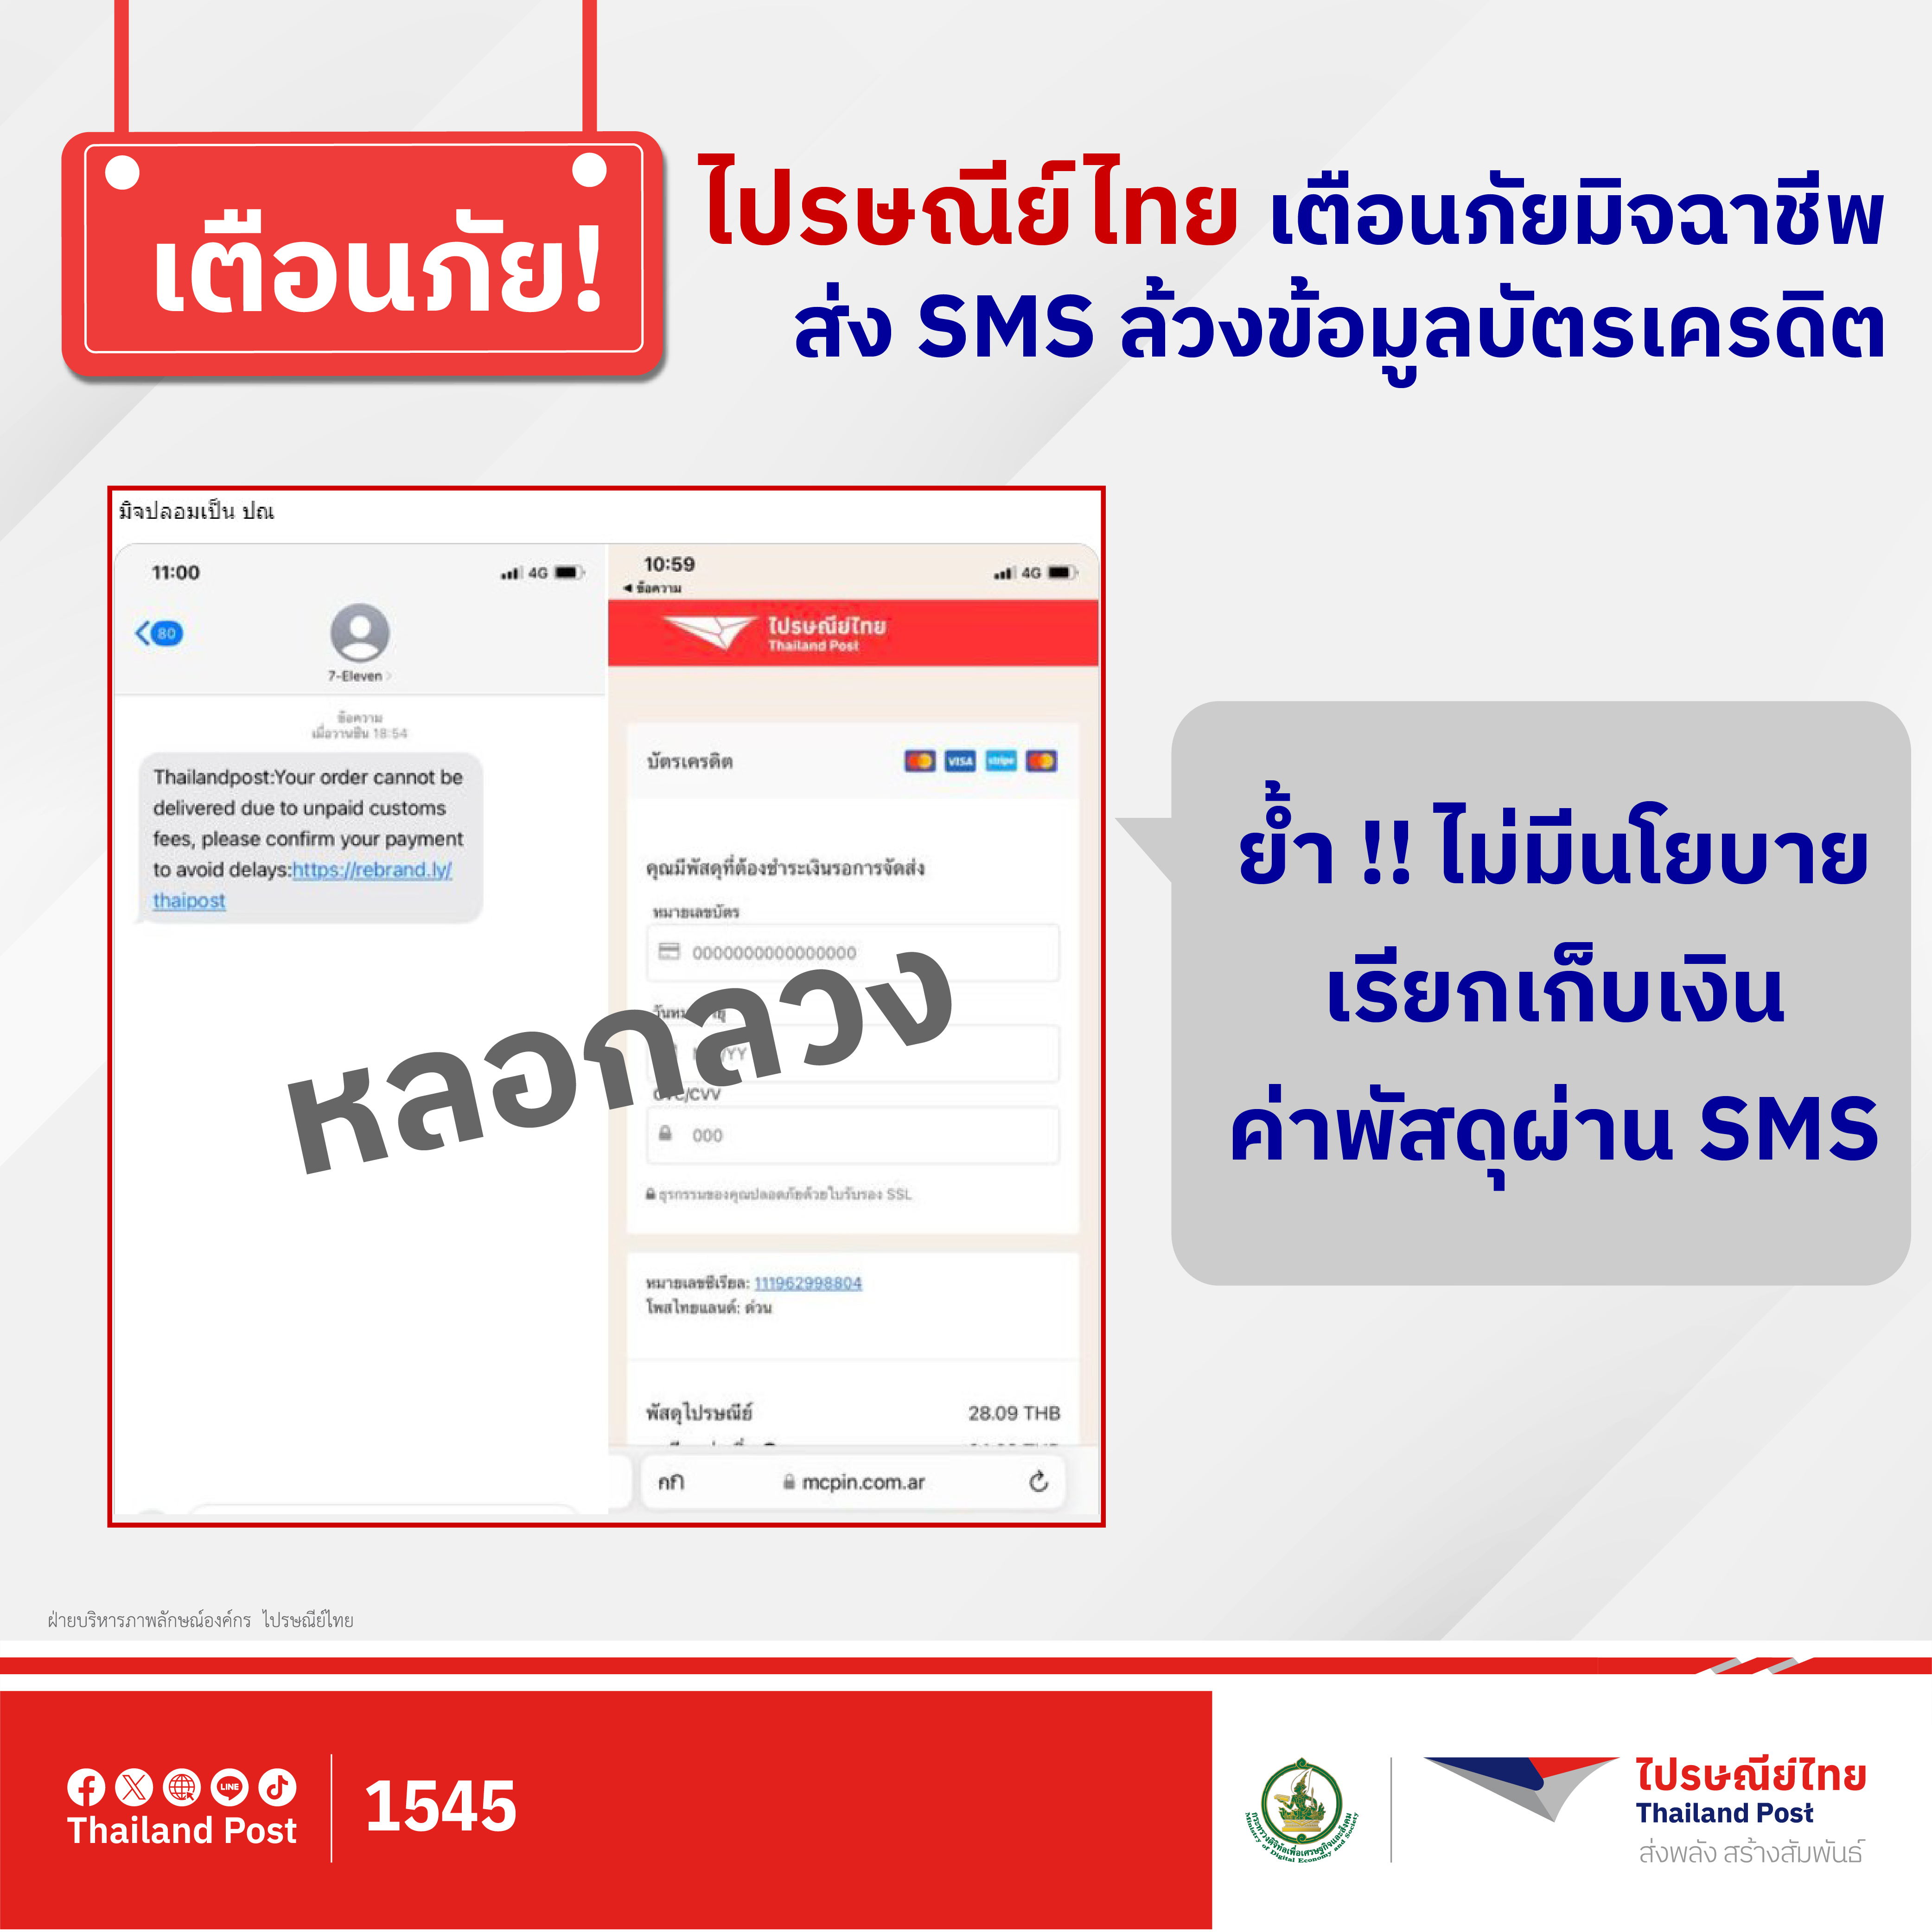 ไปรษณีย์ไทย เตือนภัย มิจฉาชีพส่ง SMS ล้วงข้อมูลบัตรเครดิต ย้ำไม่มีนโยบายธุรกรรม – เรียกเก็บเงินผ่าน SMS